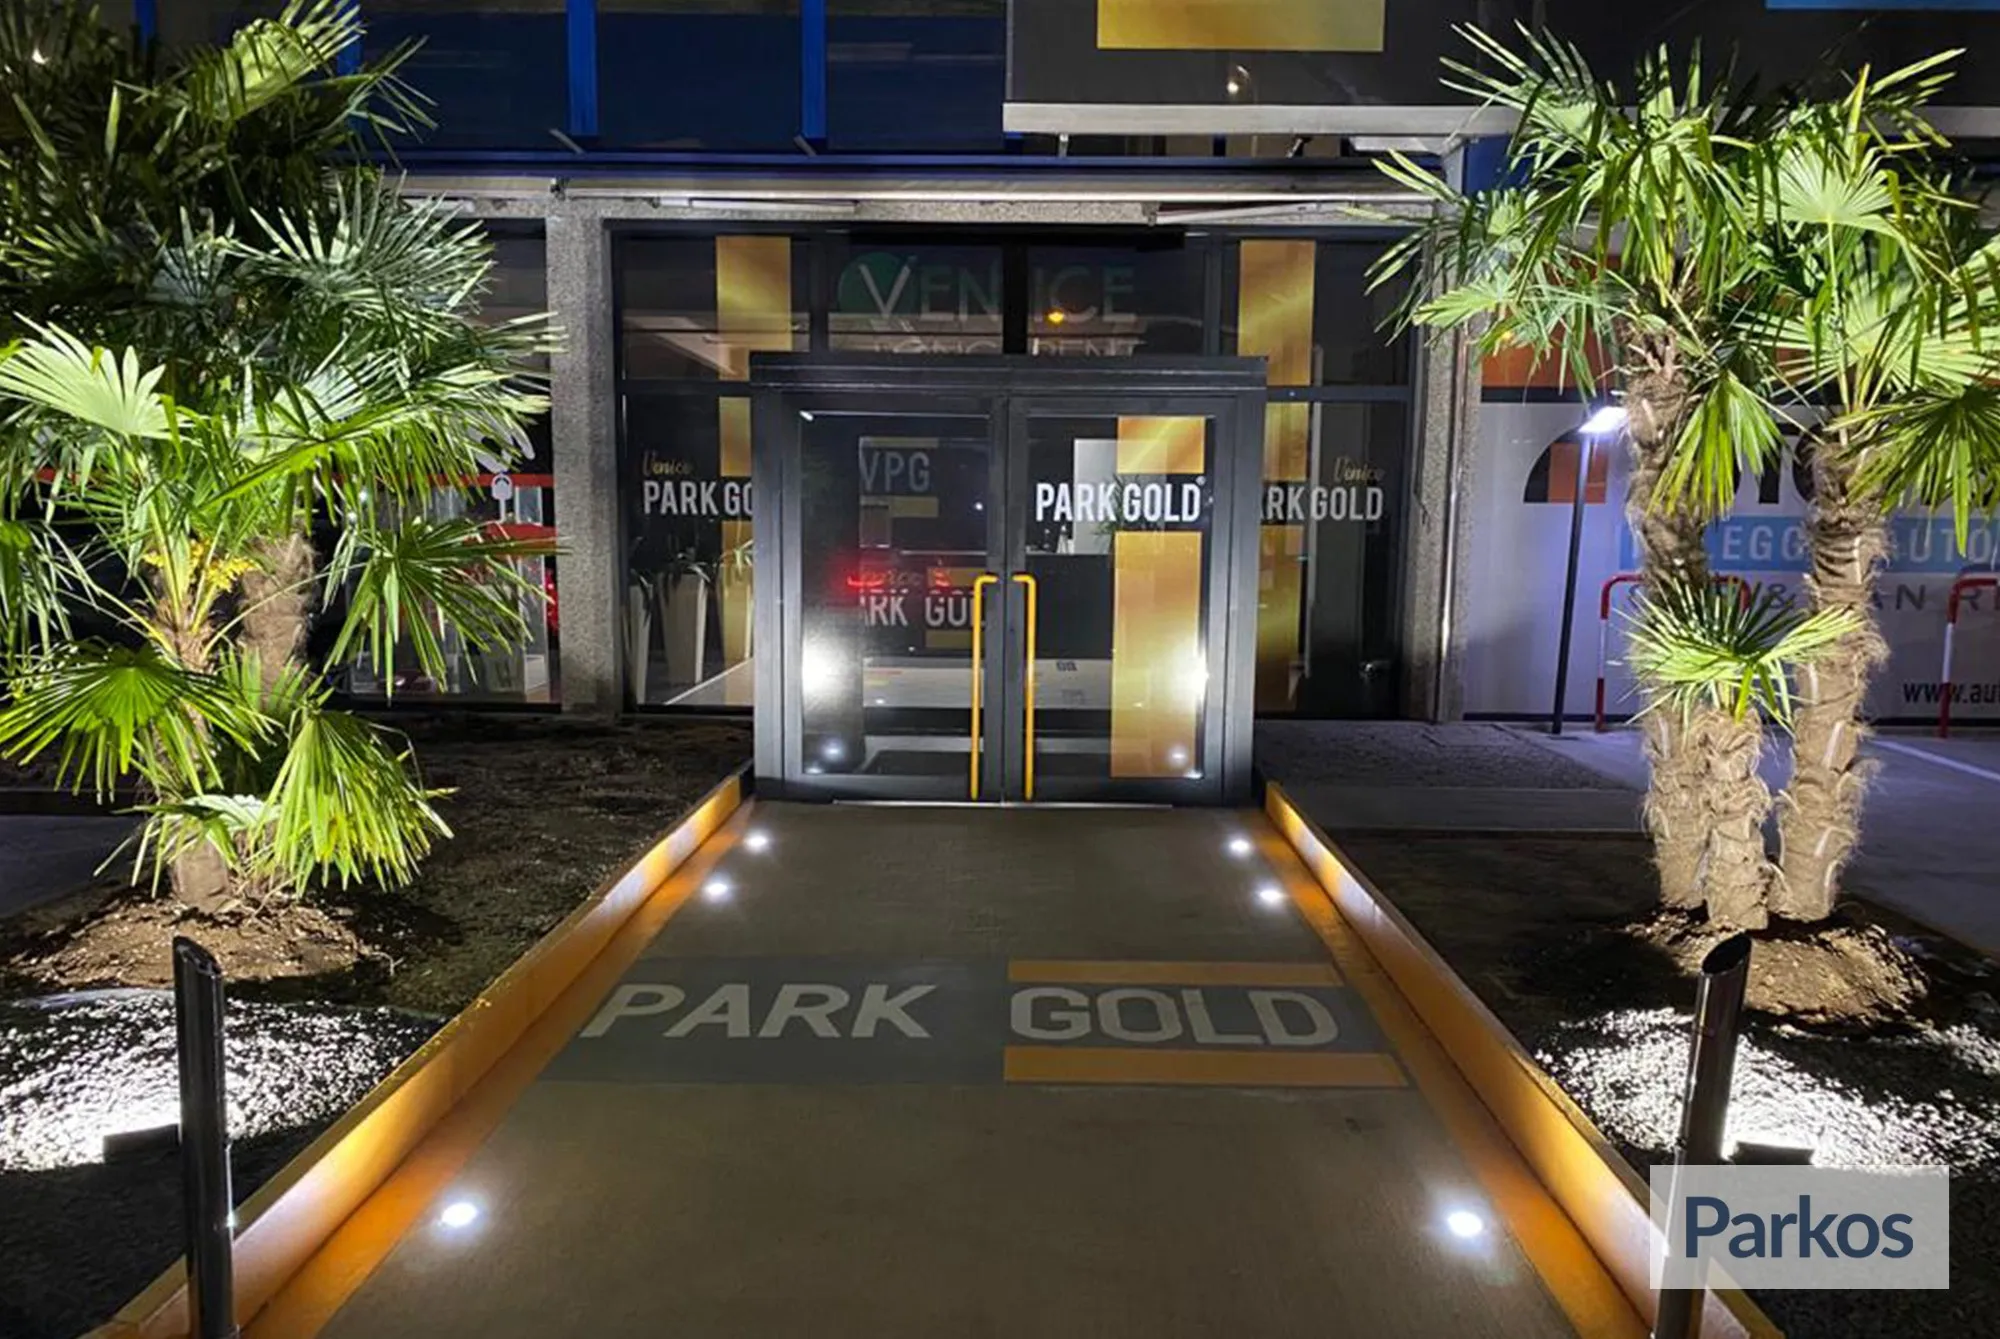 Park Gold Venezia (Paga in parcheggio) - Parcheggio Aeroporto Venezia - picture 1